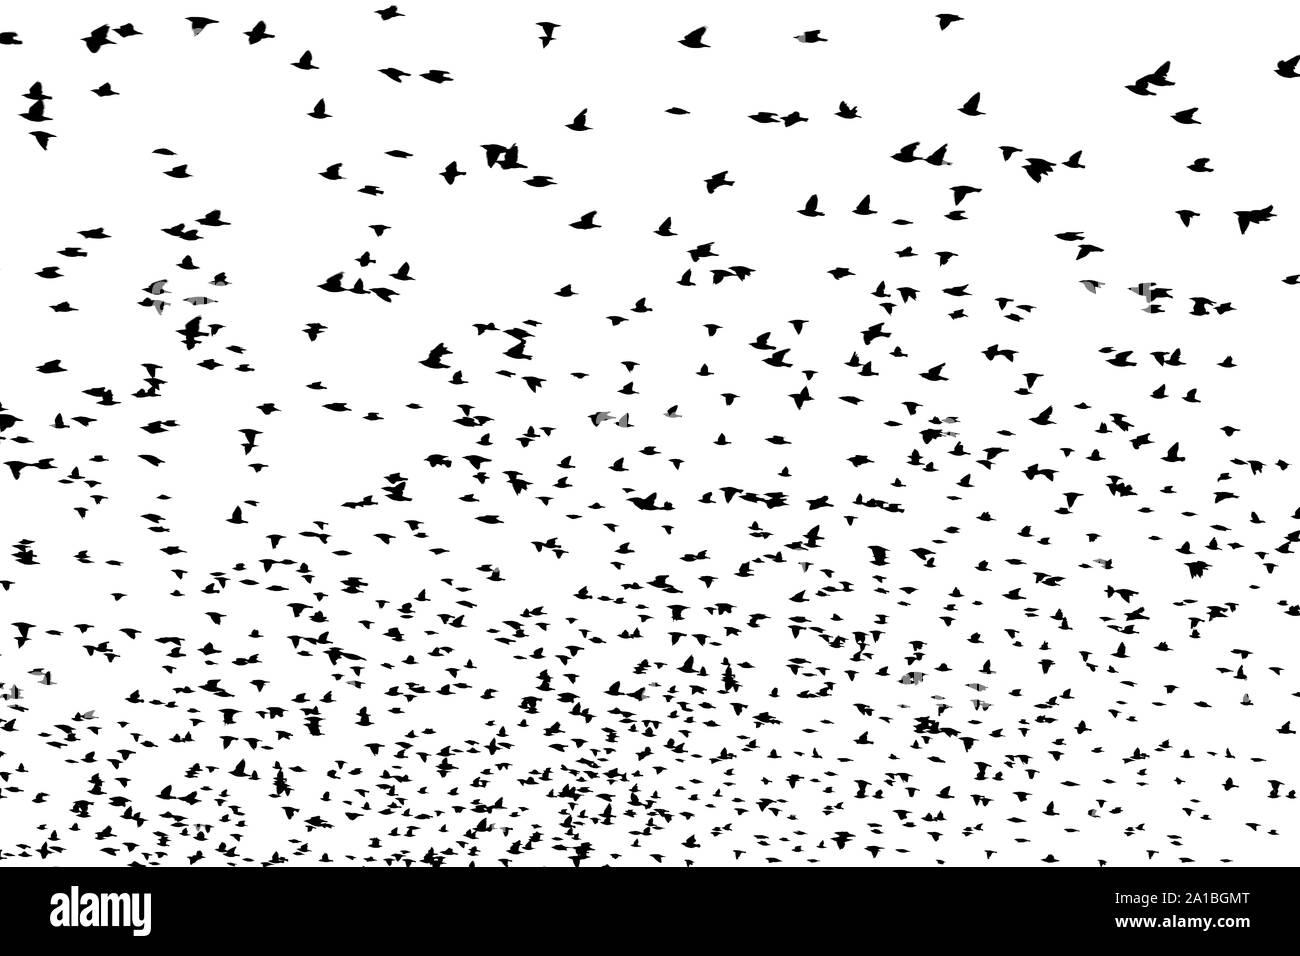 Bird silhouette swarm Stock Photo - Alamy